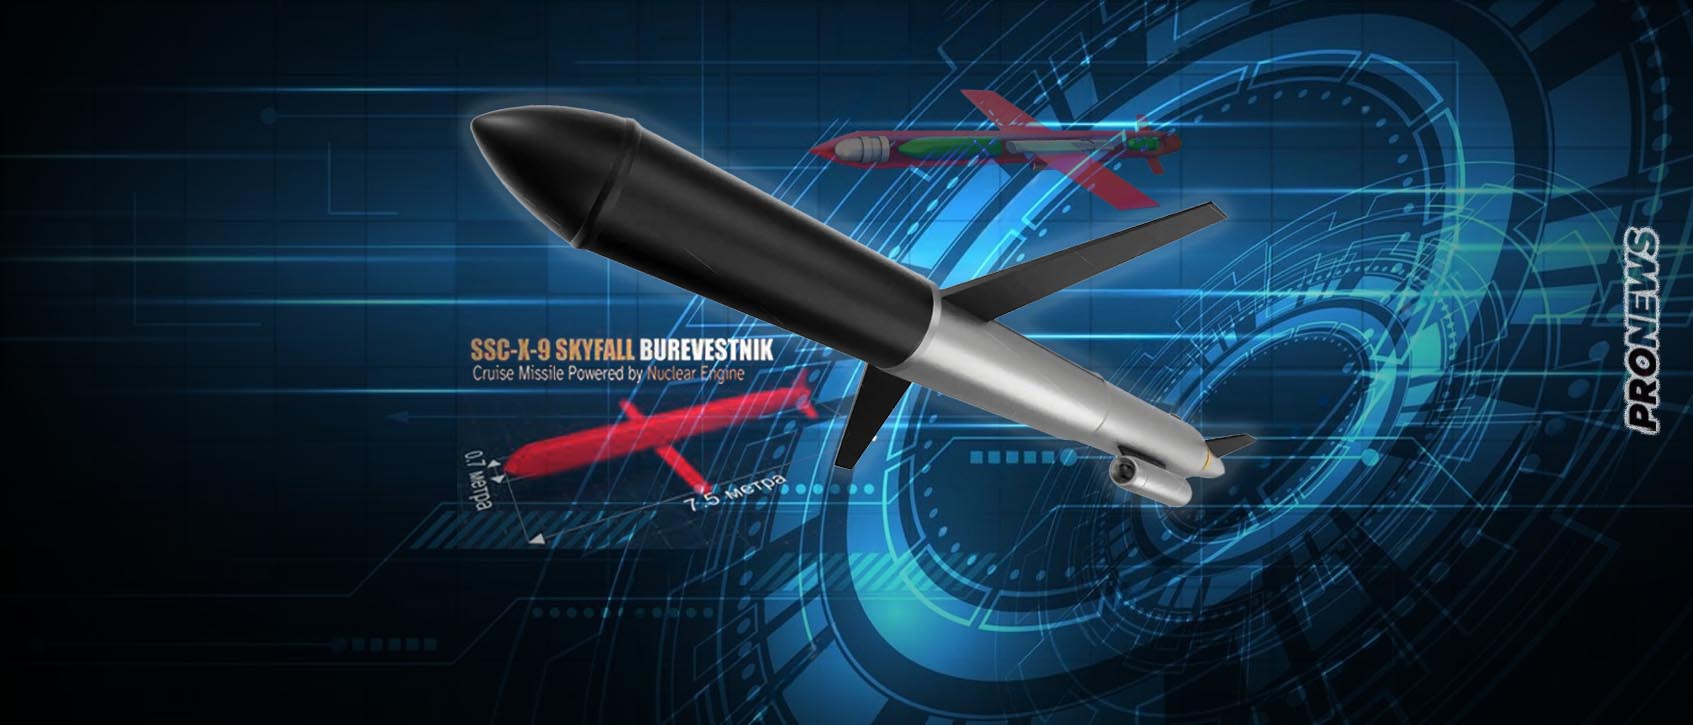 Για πρώτη φορά στην ιστορία κατασκευάστηκε όπλο με πυρηνικό κινητήρα! – Β.Πούτιν: «Είναι υπερηχητικός πύραυλος cruise»